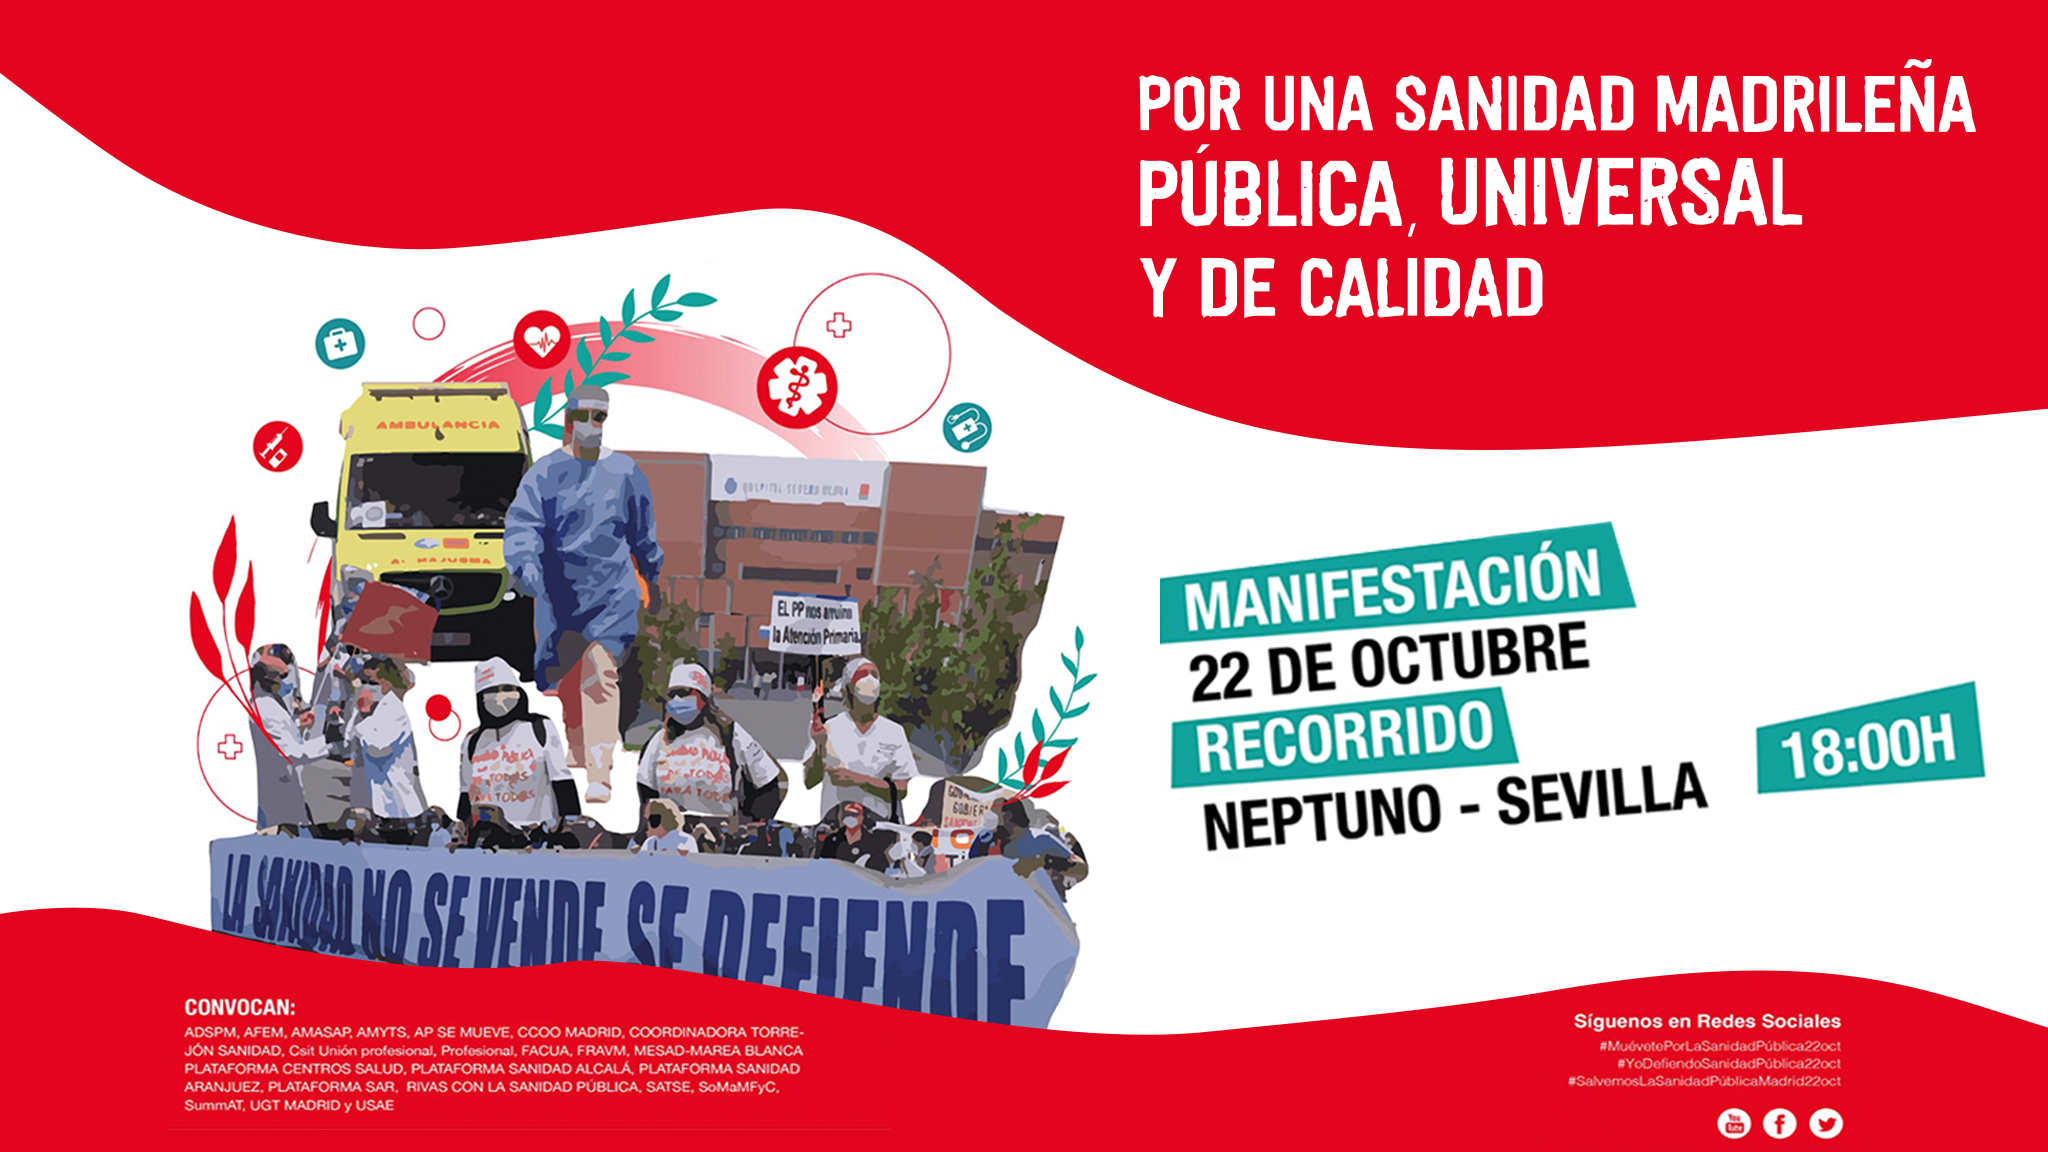 IU Madrid apoya la manifestación en defensa de la Sanidad Pública Madrileña